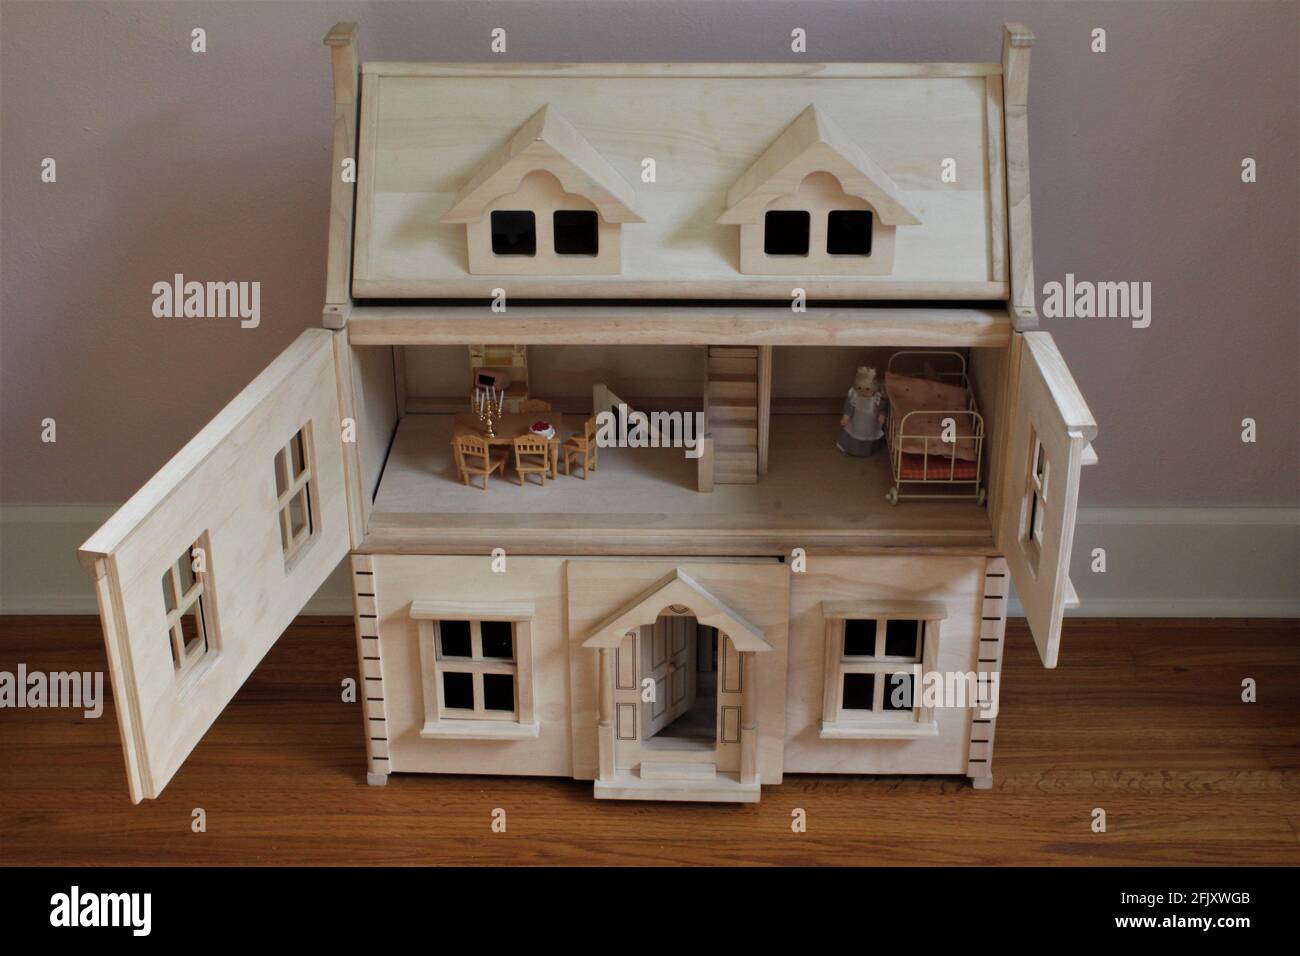 Une maison de poupée en bois de bricolage dans la chambre d'un enfant pour  faire semblant. Les portes sont ouvertes au deuxième étage et la salle de  poupées est montrée avec des